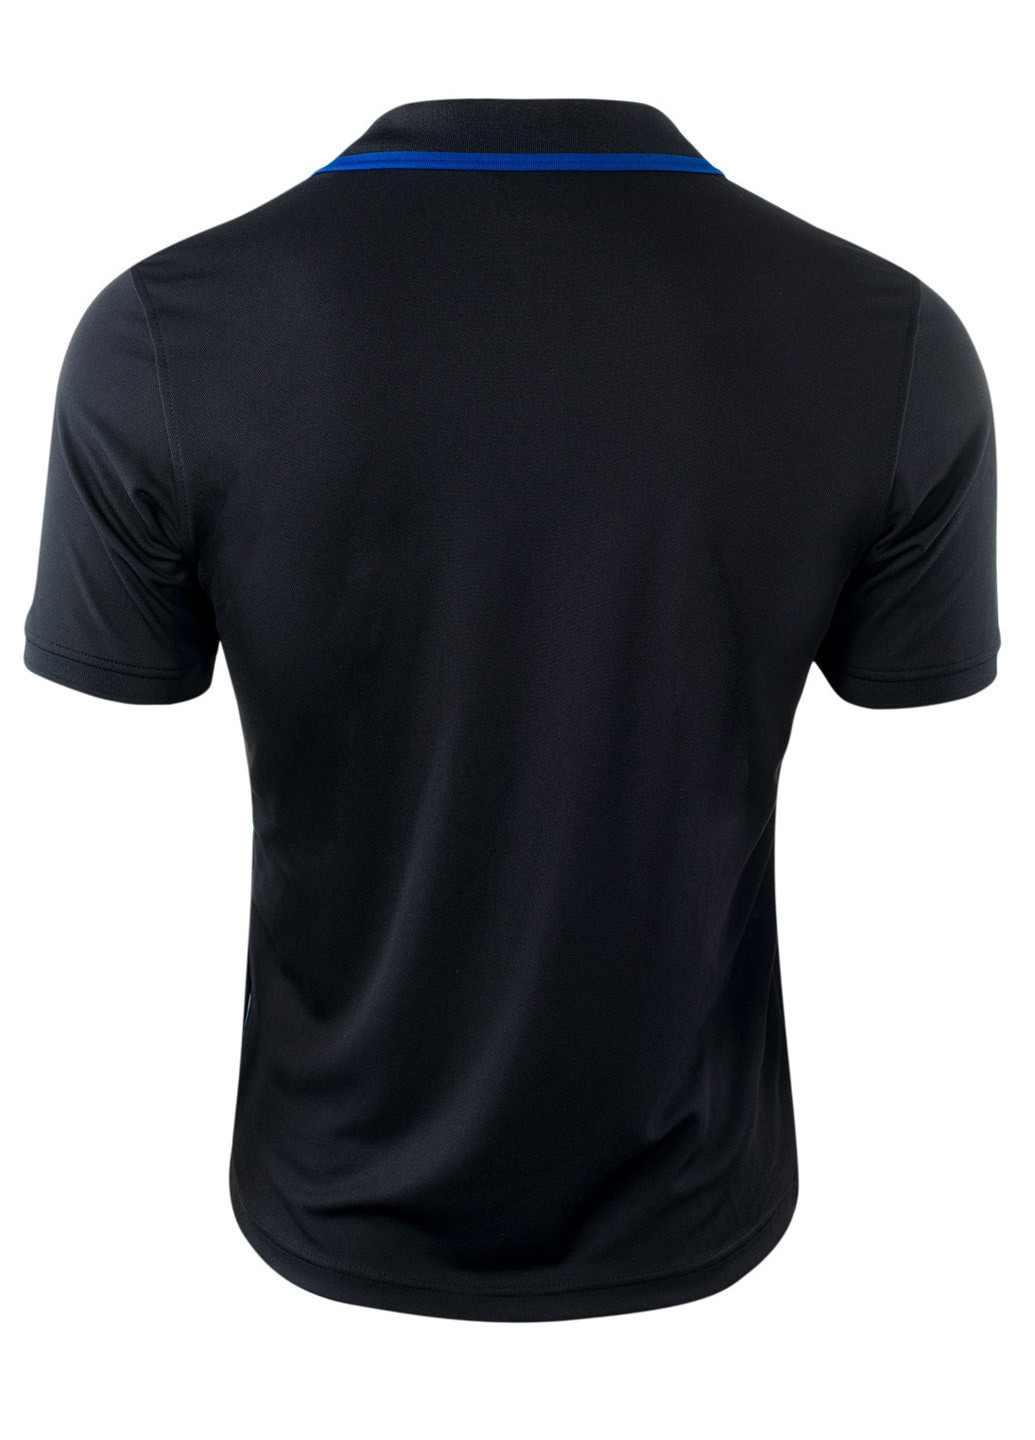 Черная футболка-поло для мужчин Hi-Tec однотонная